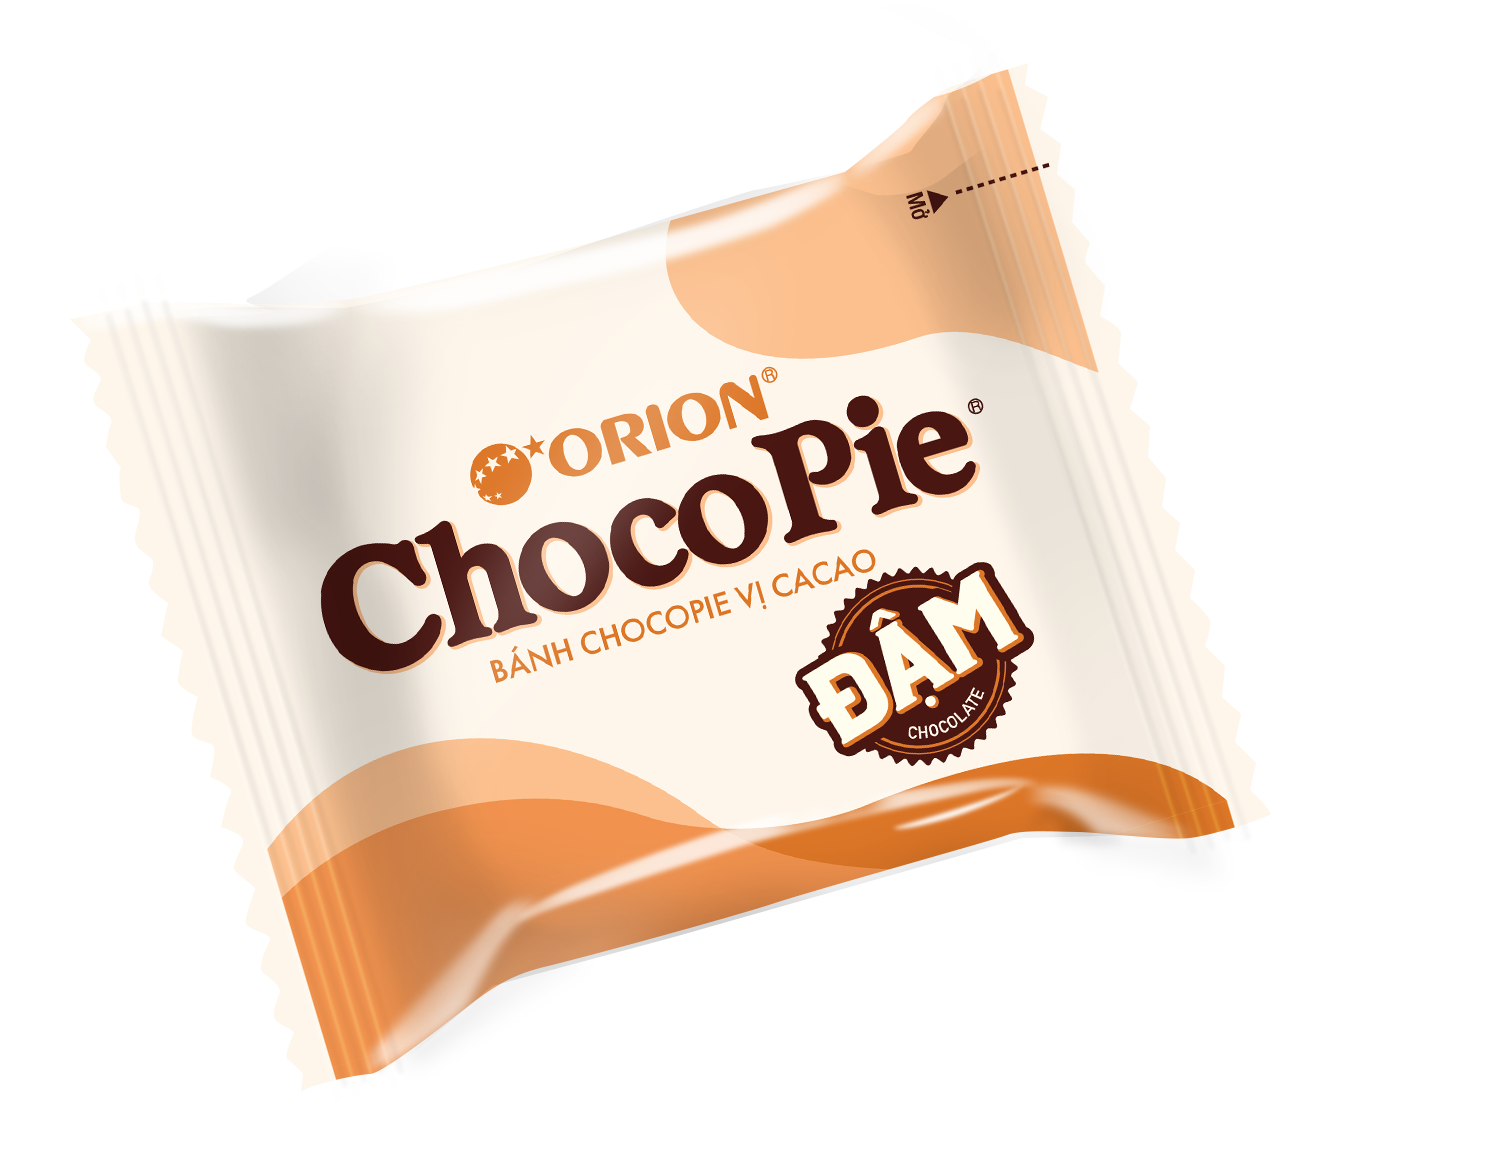 Combo 4 Hộp Bánh ChocoPie ĐẬM vị cacao Orion 360G